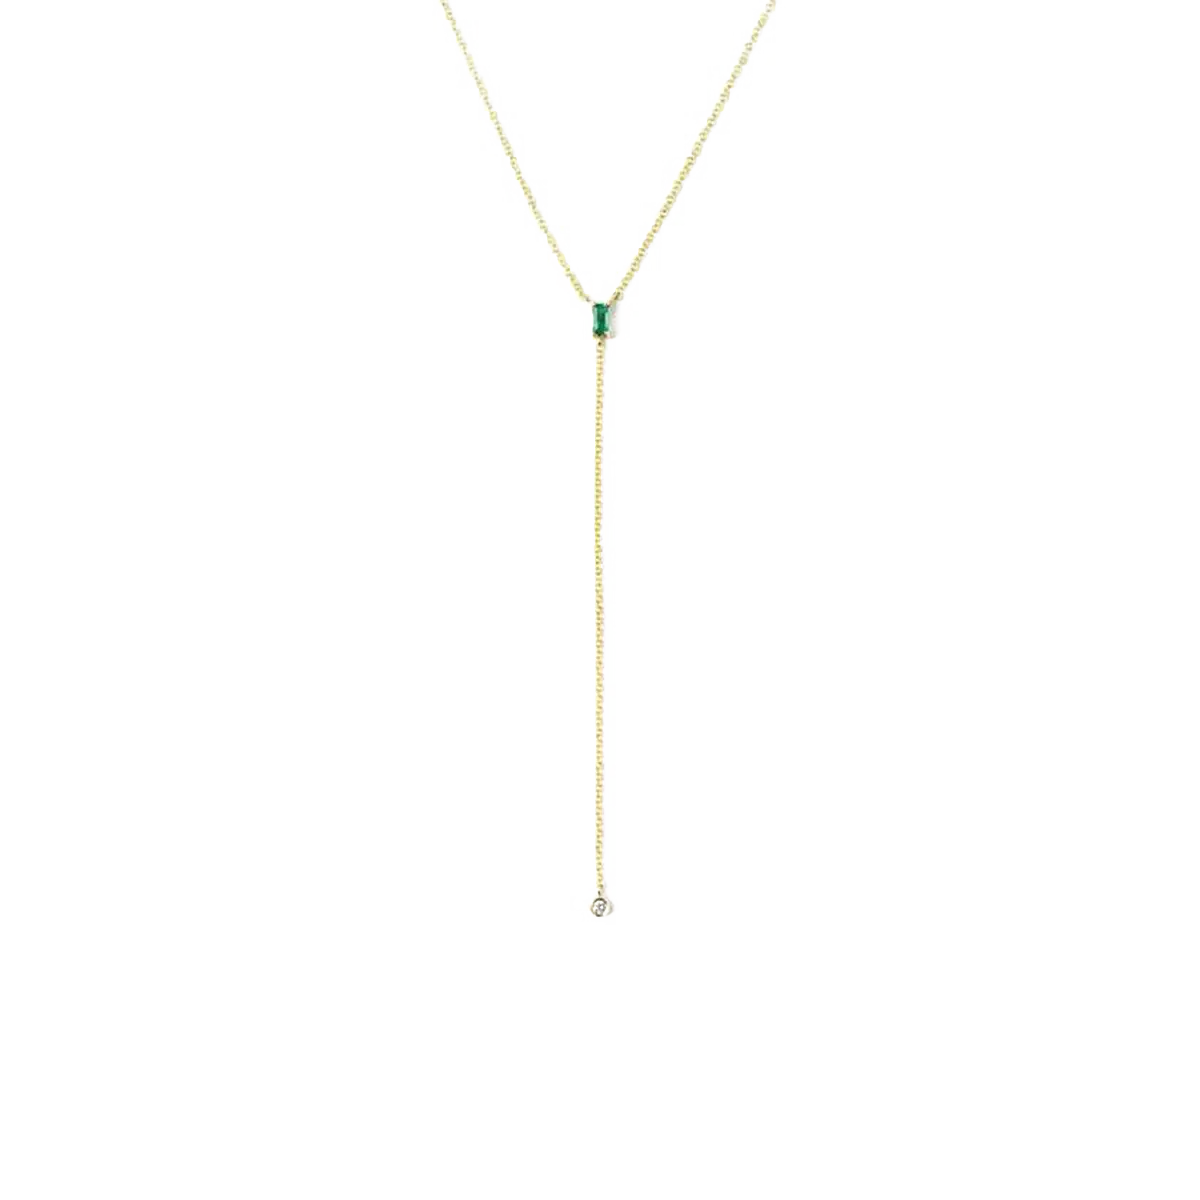 Squash Blossom and Lariat Necklaces